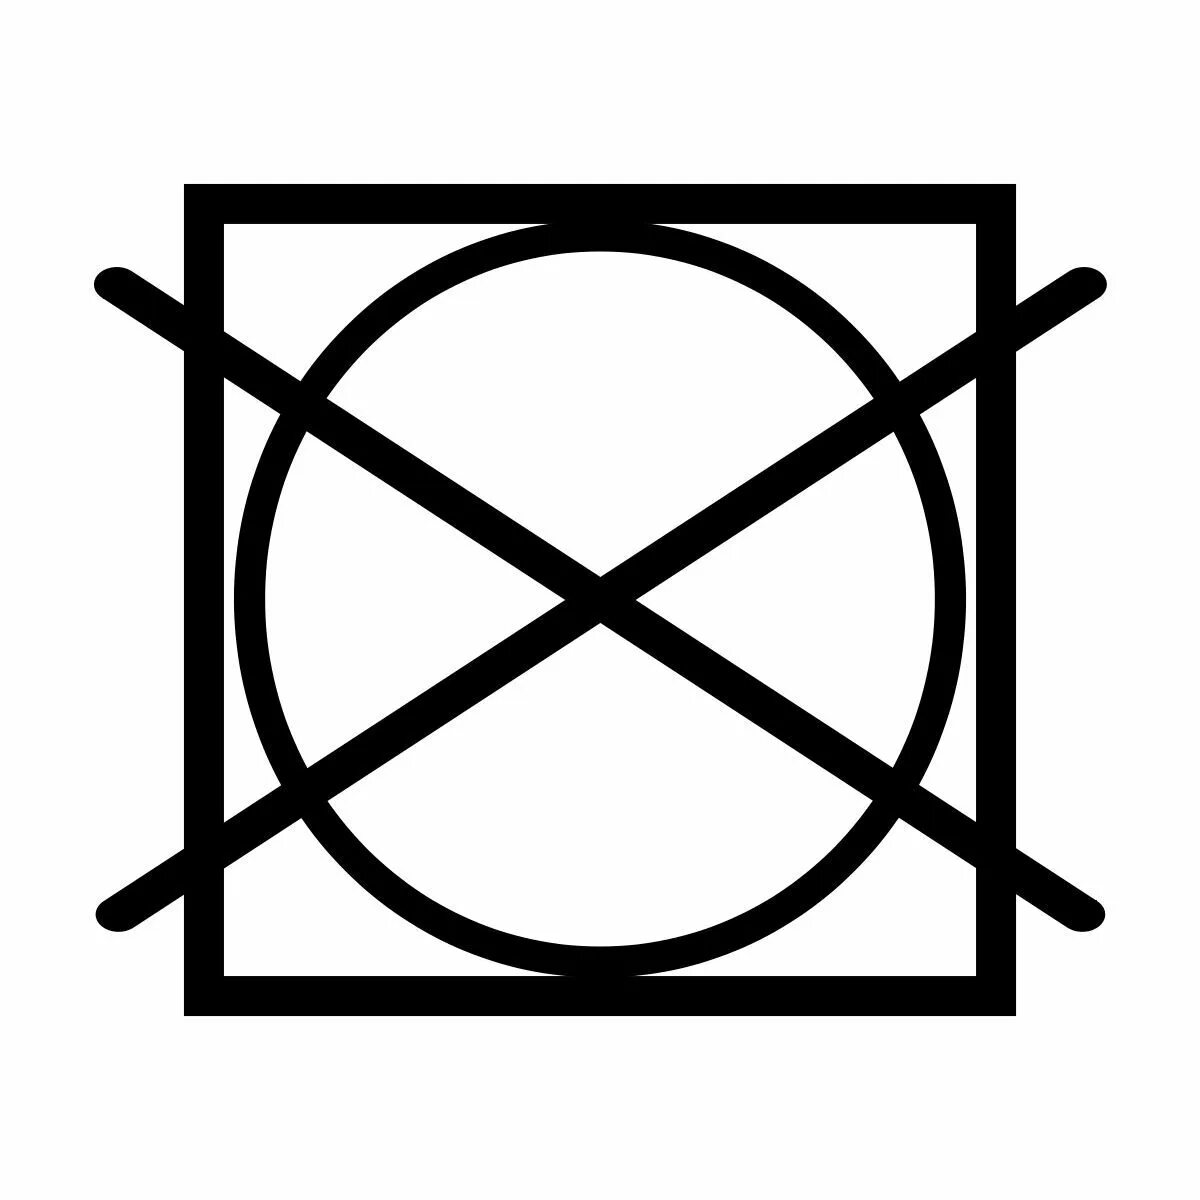 Значок круг в квадрате перечеркнутый. Пиктограмма не отжимать. Барабанная сушка запрещена значок. Машинная сушка запрещена значок. Круг на бирке